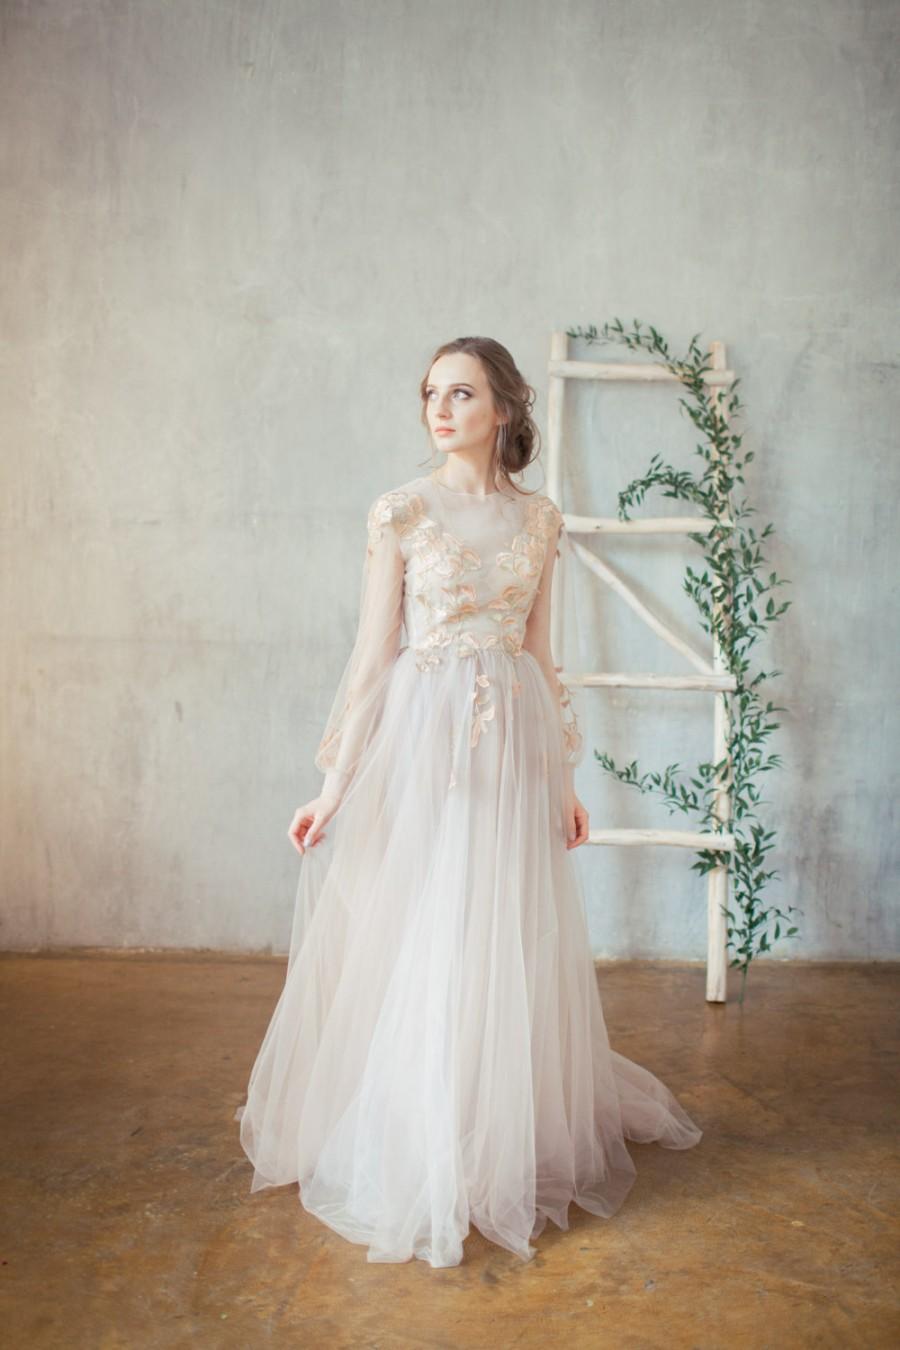 Mariage - Doren / Golden embroidered blush wedding dress / Boned